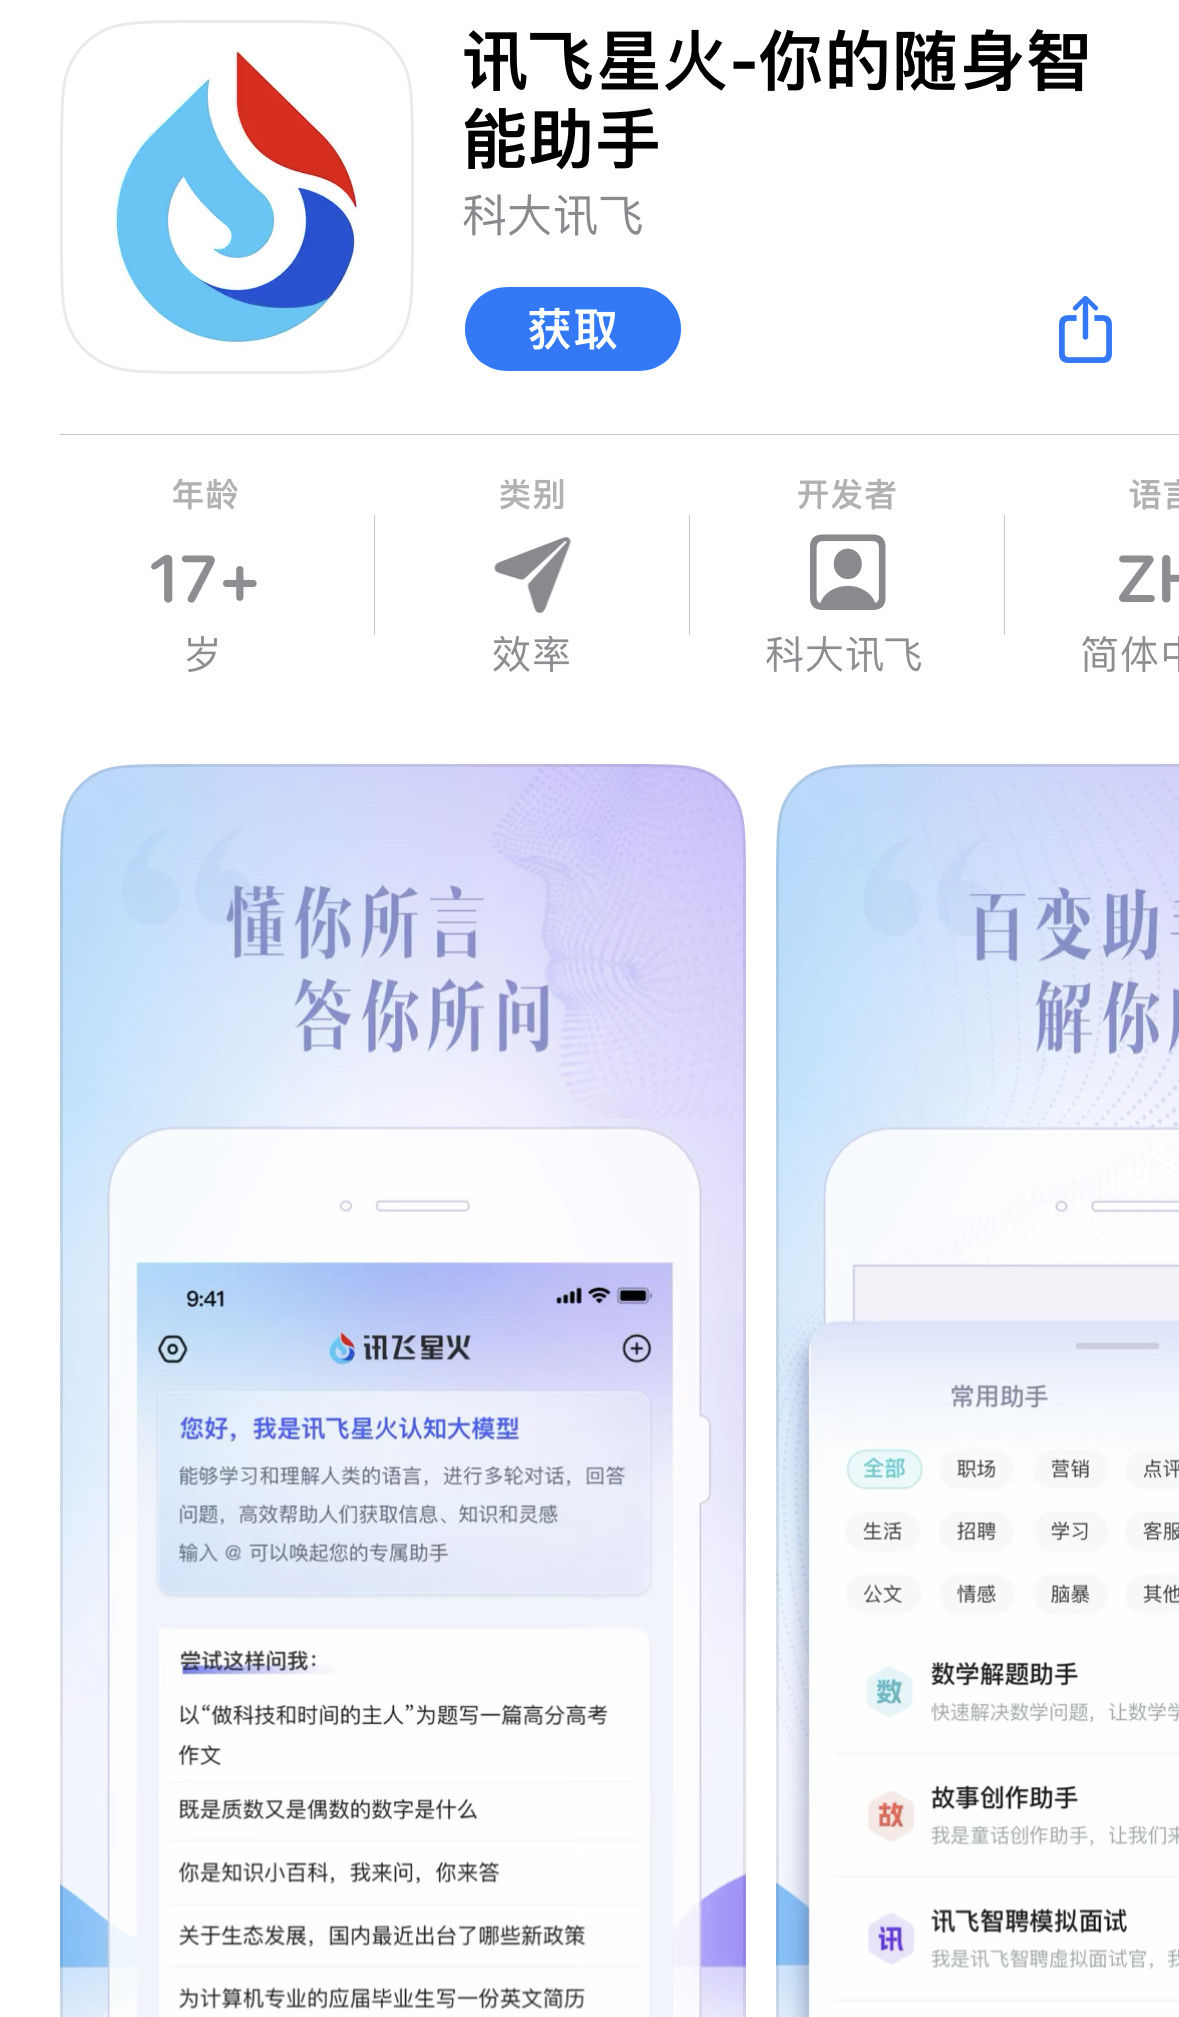 讯飞星火 App上线苹果iOS平台，须获取内测资格后使用